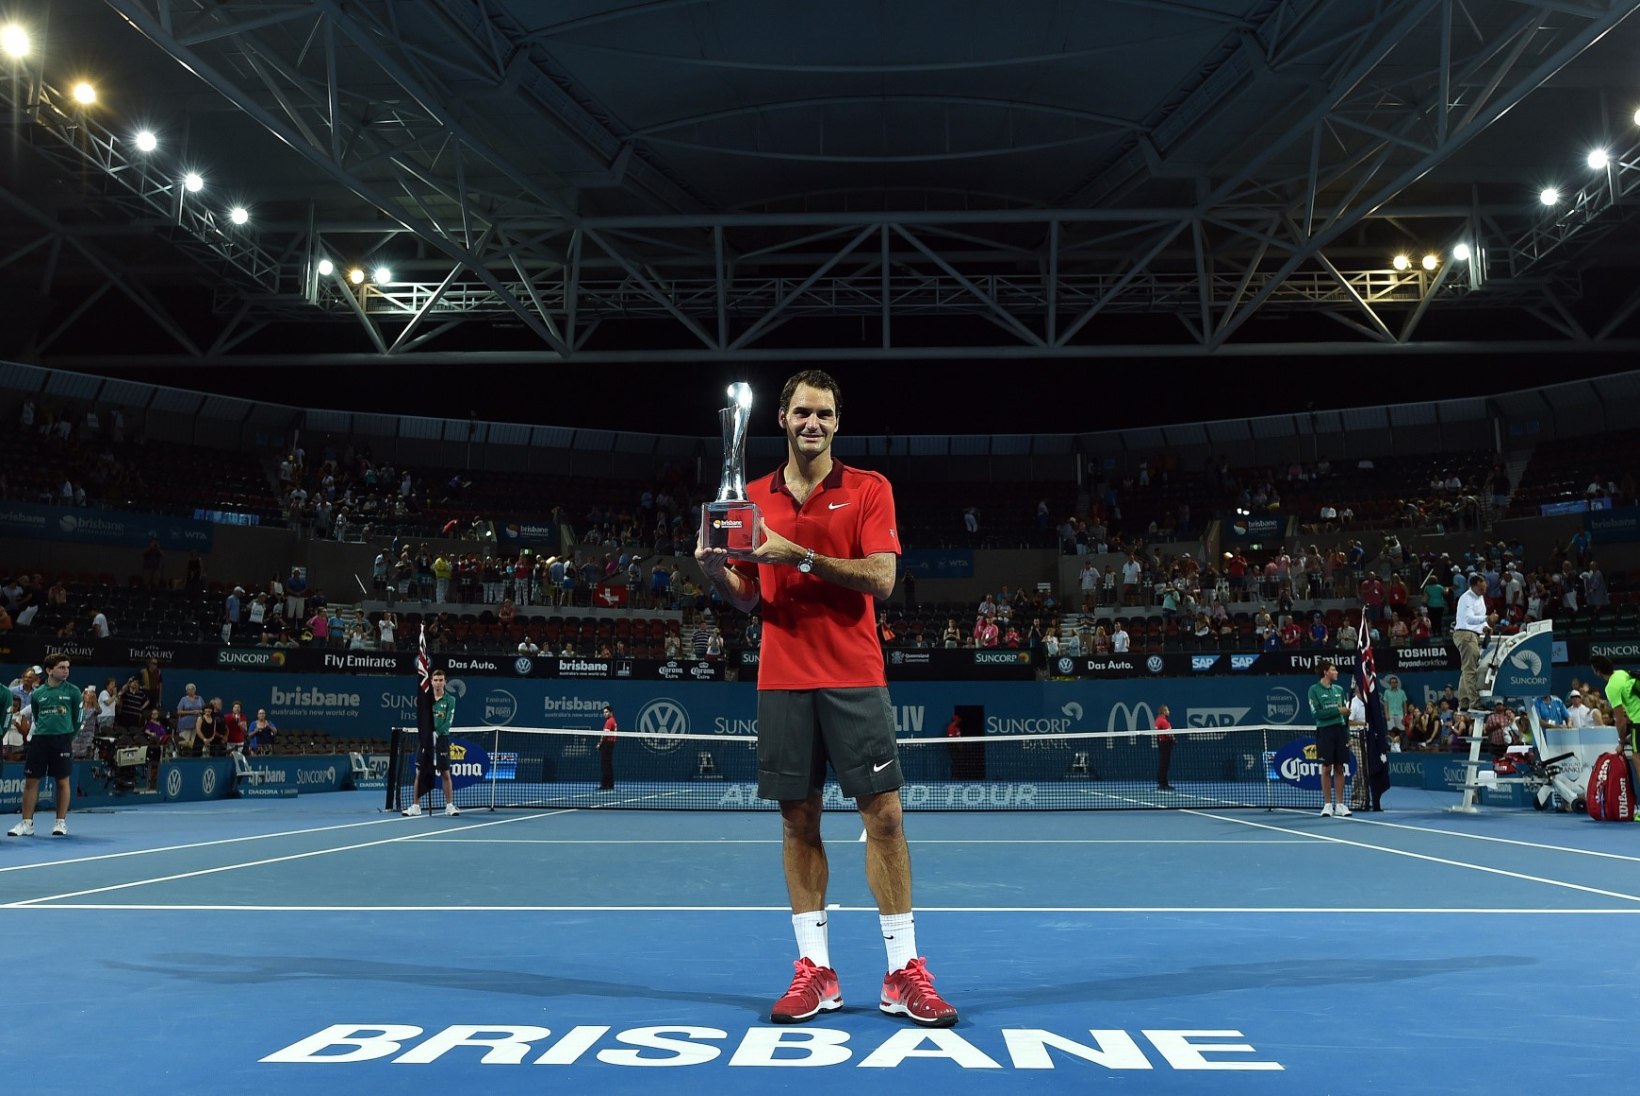 GALERII: Brisbane'is löömatuks jäänud Federer saavutas karjääri 1000. matšivõidu!